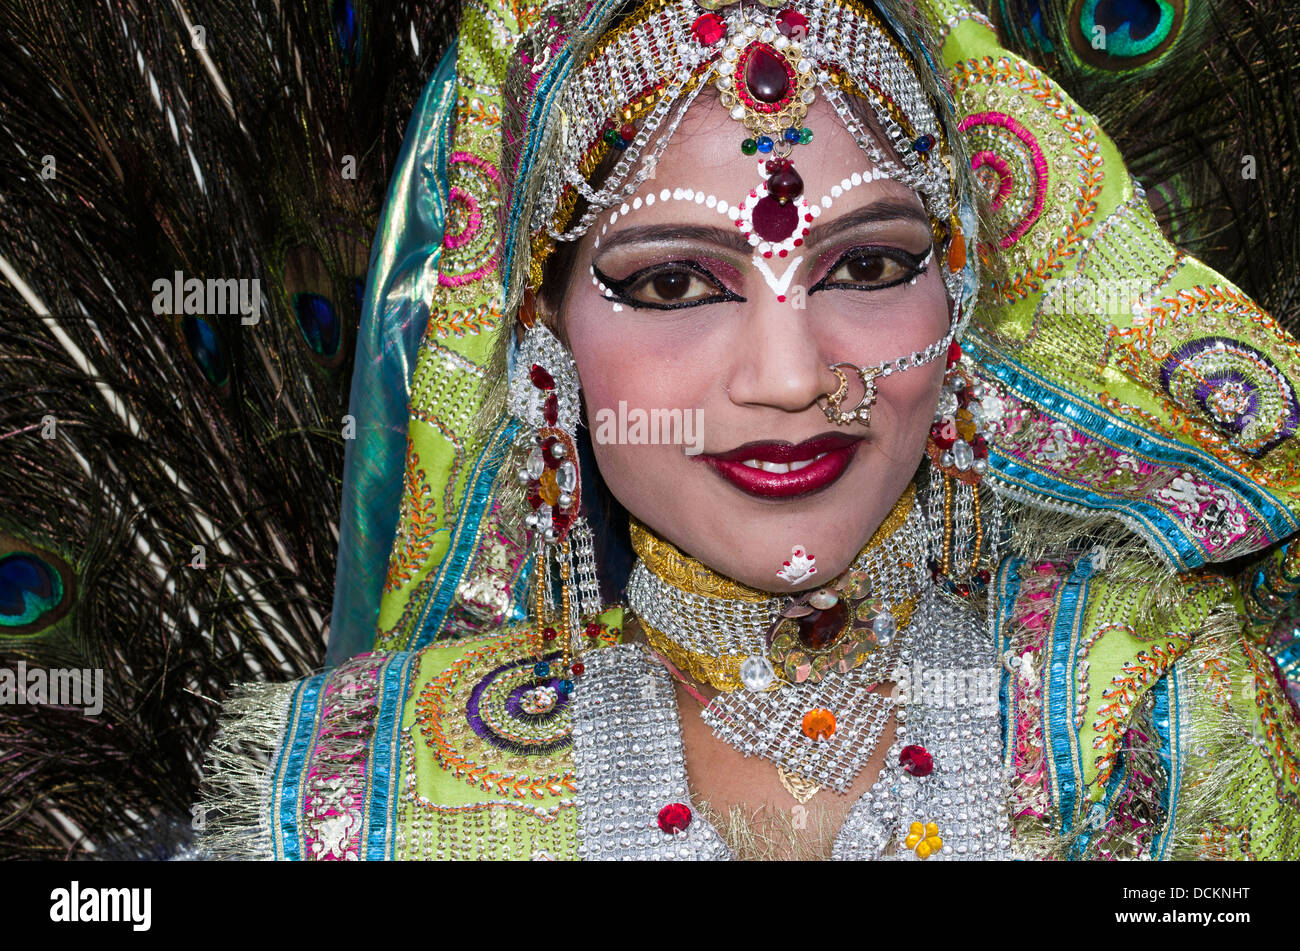 Danseur/musicien folklorique du Rajasthan - Jaipur, Rajasthan, Inde Banque D'Images